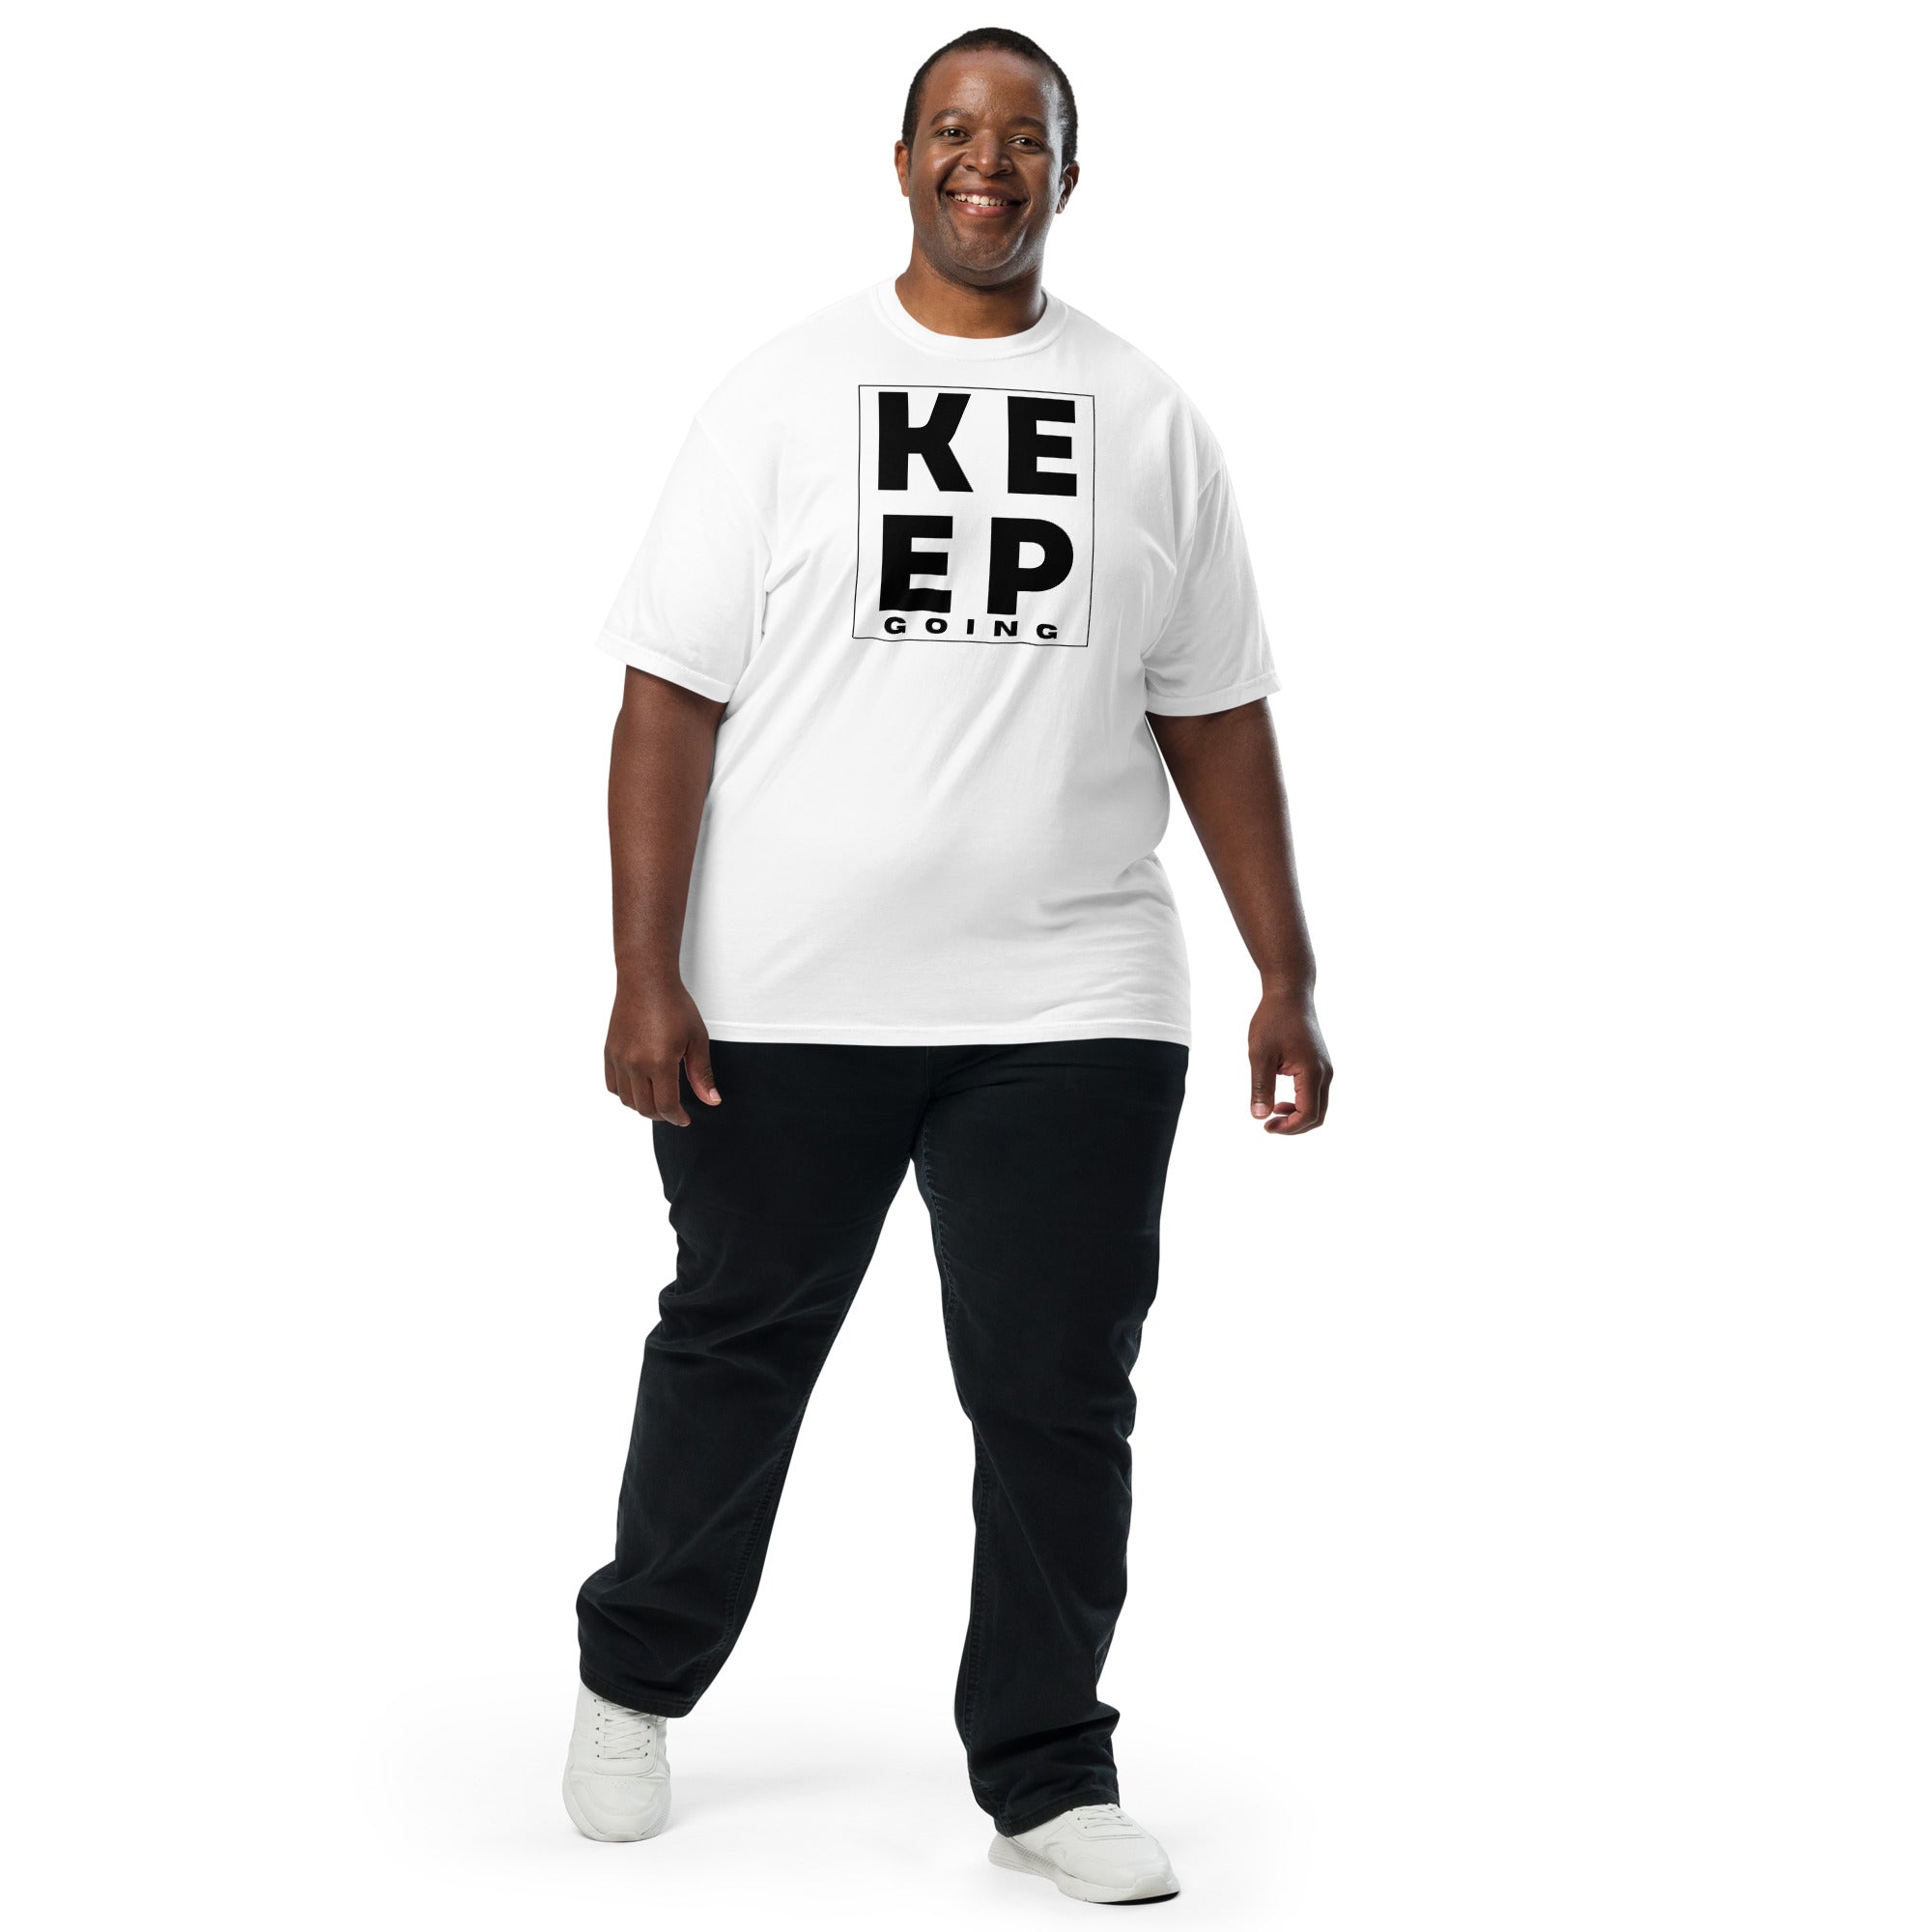 Keep Going Men’s garment-dyed heavyweight t-shirt